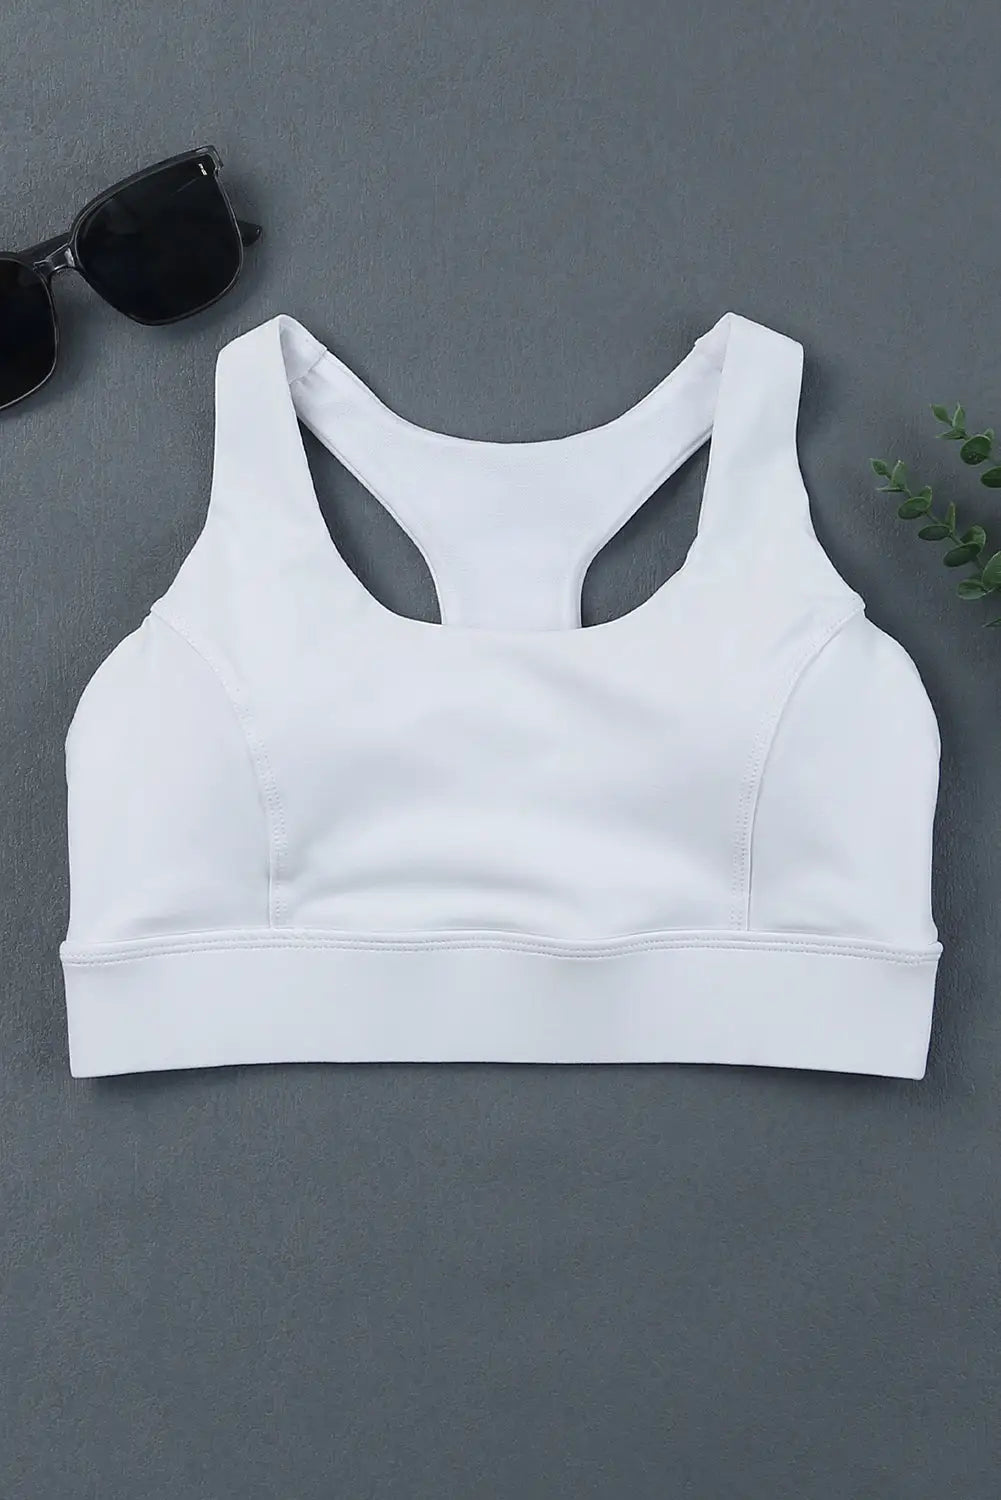 White athletic push up sports bra - bras